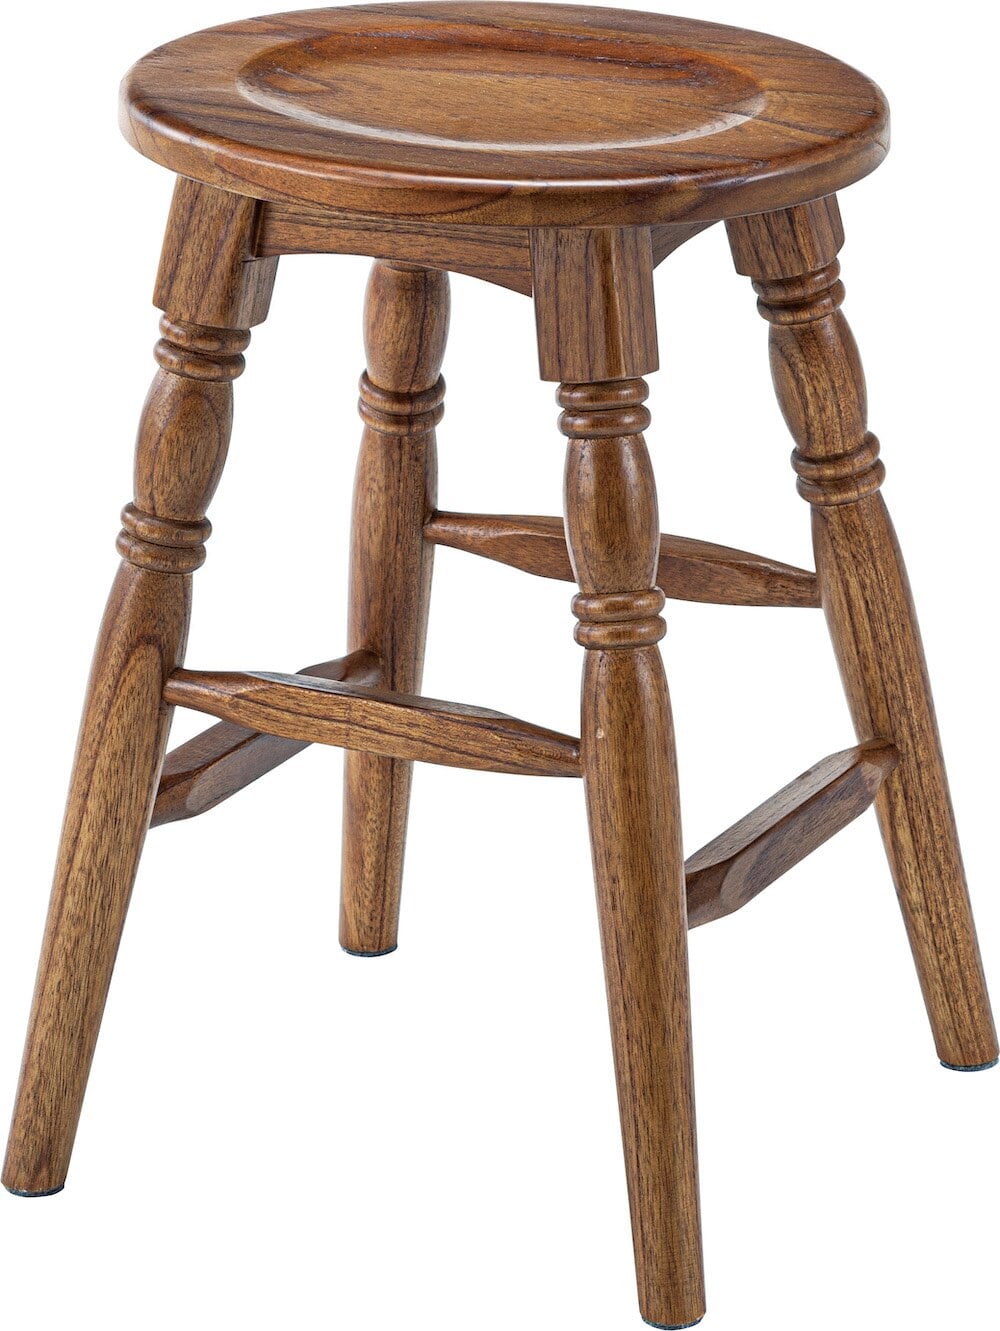 スツール 木製 高さ45cm 楕円 ロータイプ 上品 おしゃれ 椅子 いす アンティーク調 シャビーシック ブラウン ホワイト |  selecshopクレイン powered by BASE